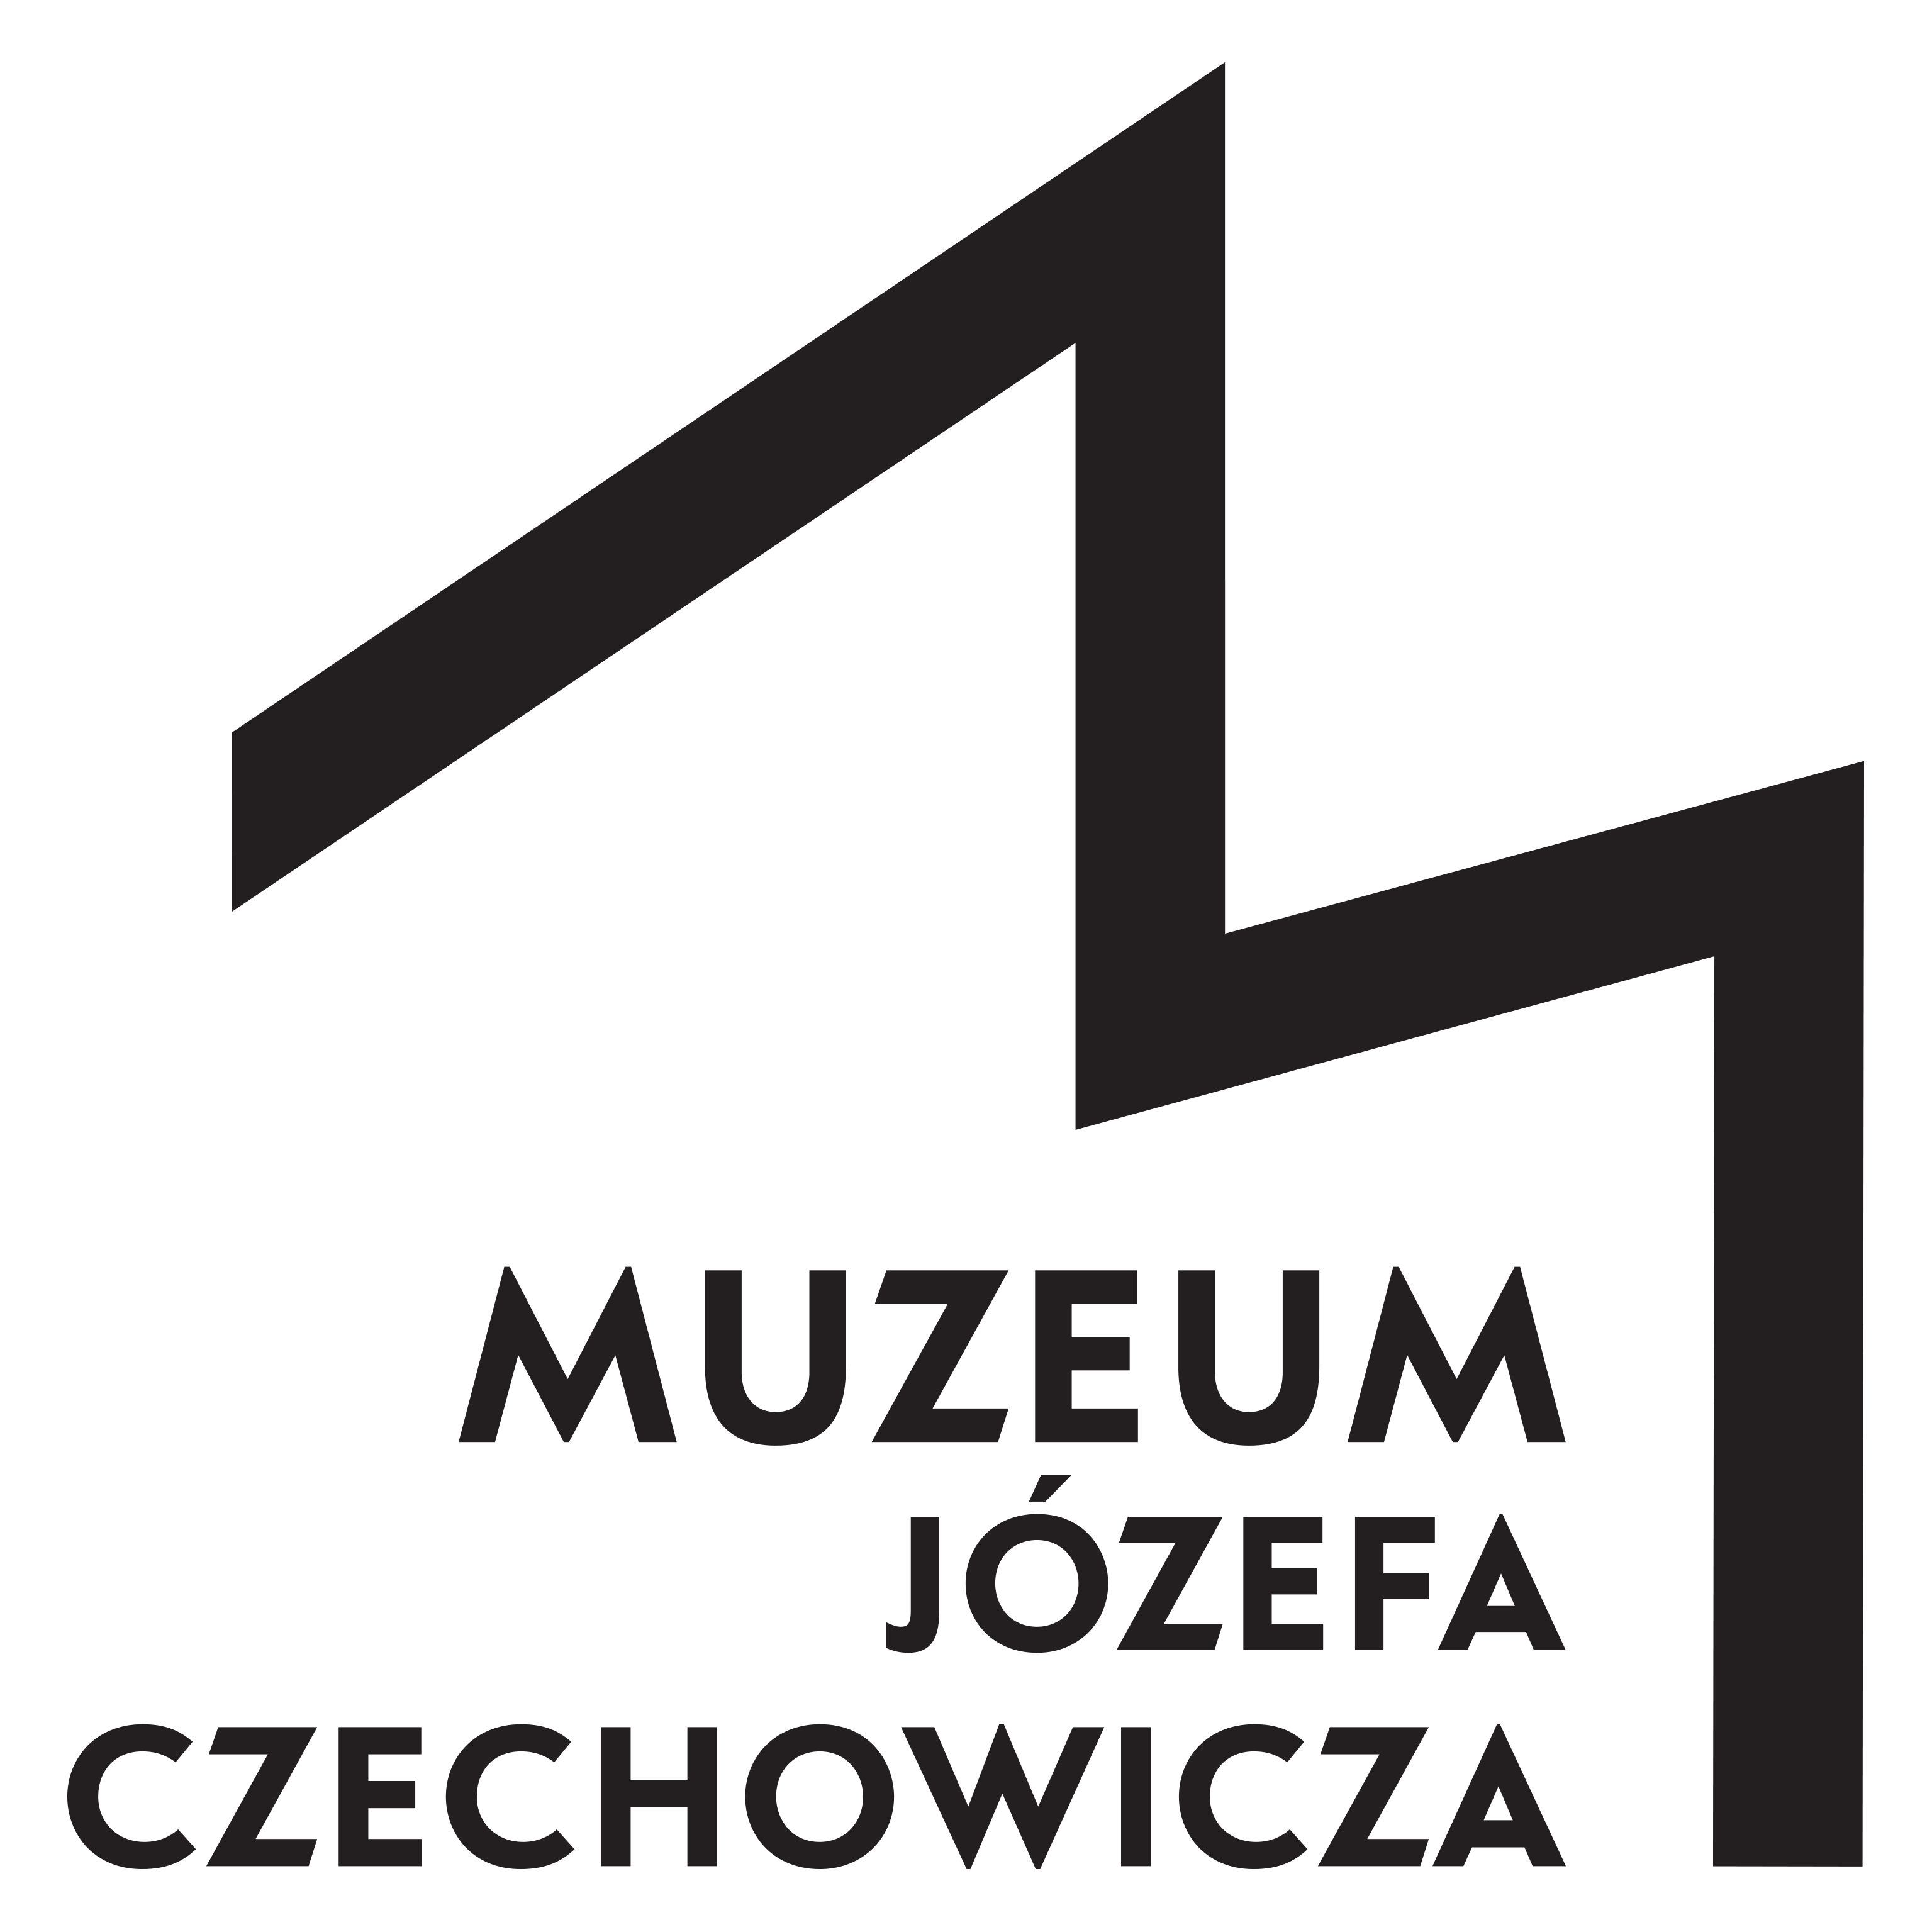 Logotyp j. czechowicza